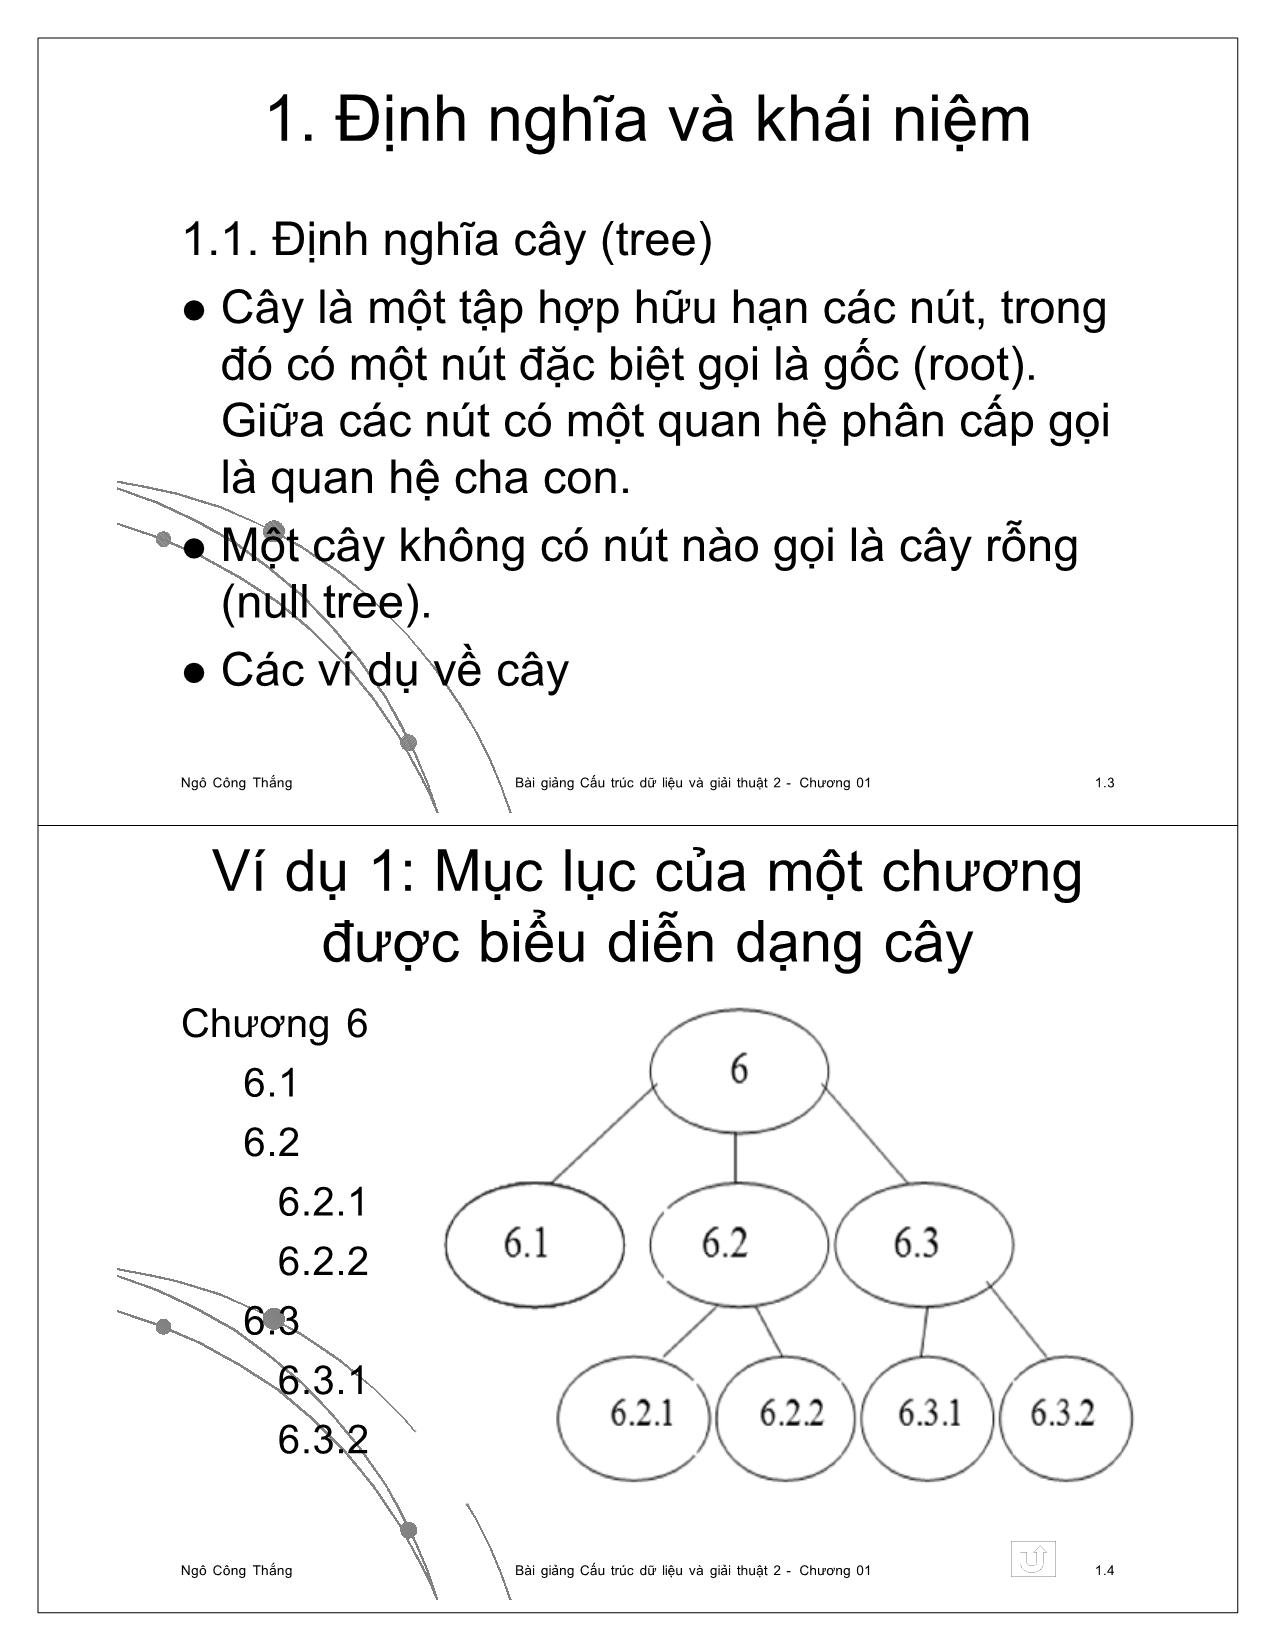 Bài giảng Cấu trúc dữ liệu và giải thuật 2 - Chương 1: Cây (Tree) - Ngô Công Thắng trang 2